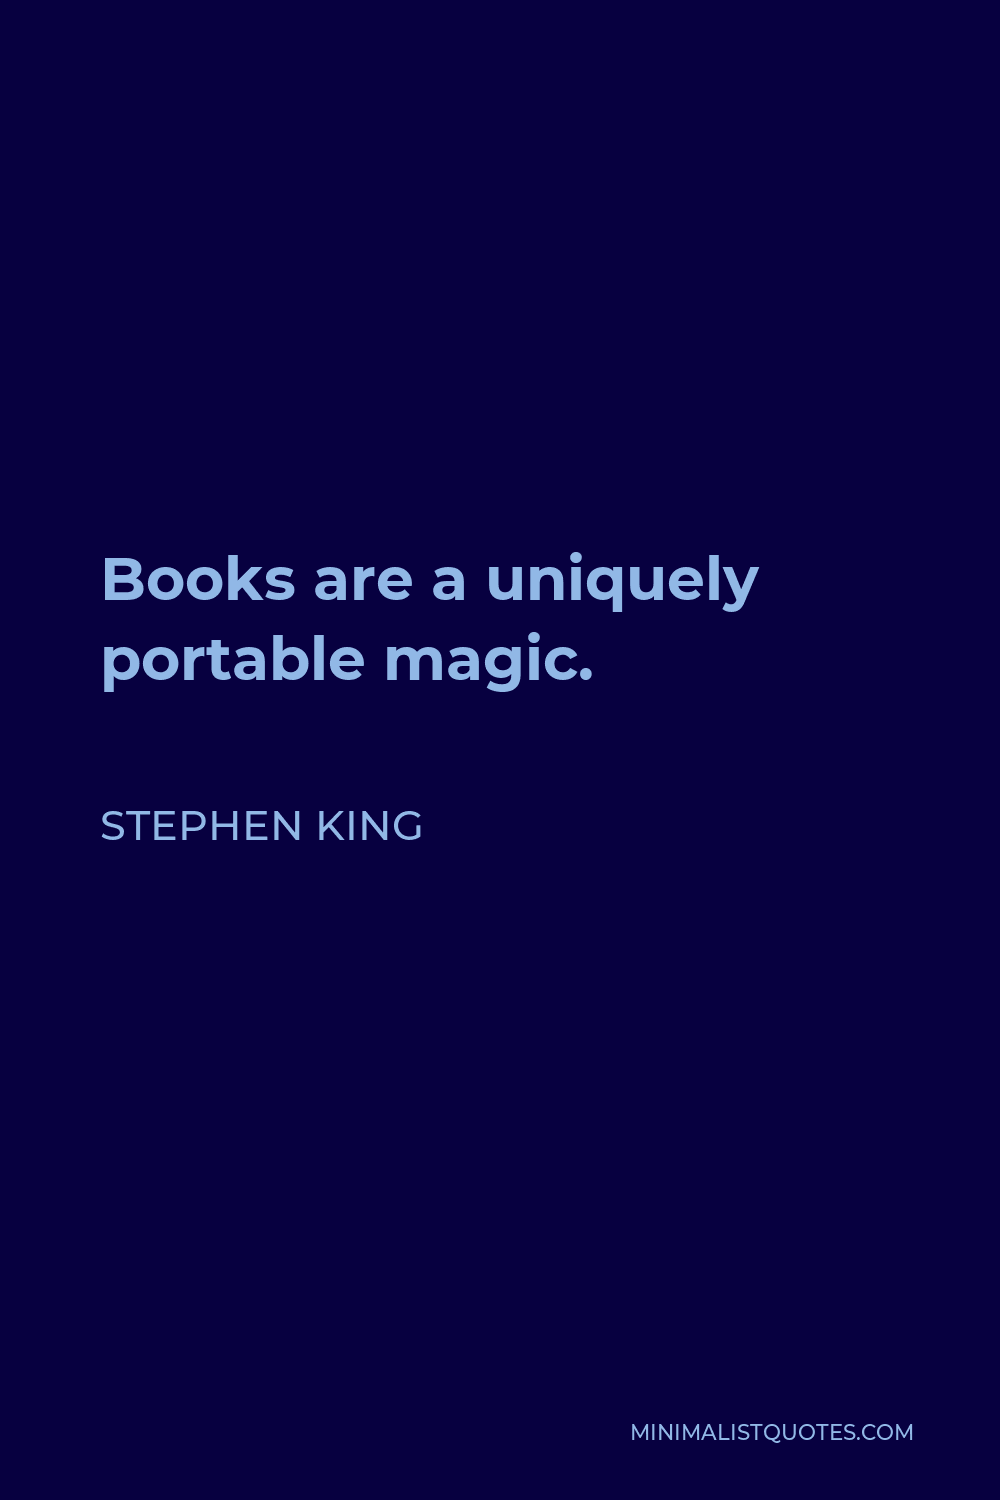 Stephen King Quote: Books are a uniquely portable magic.